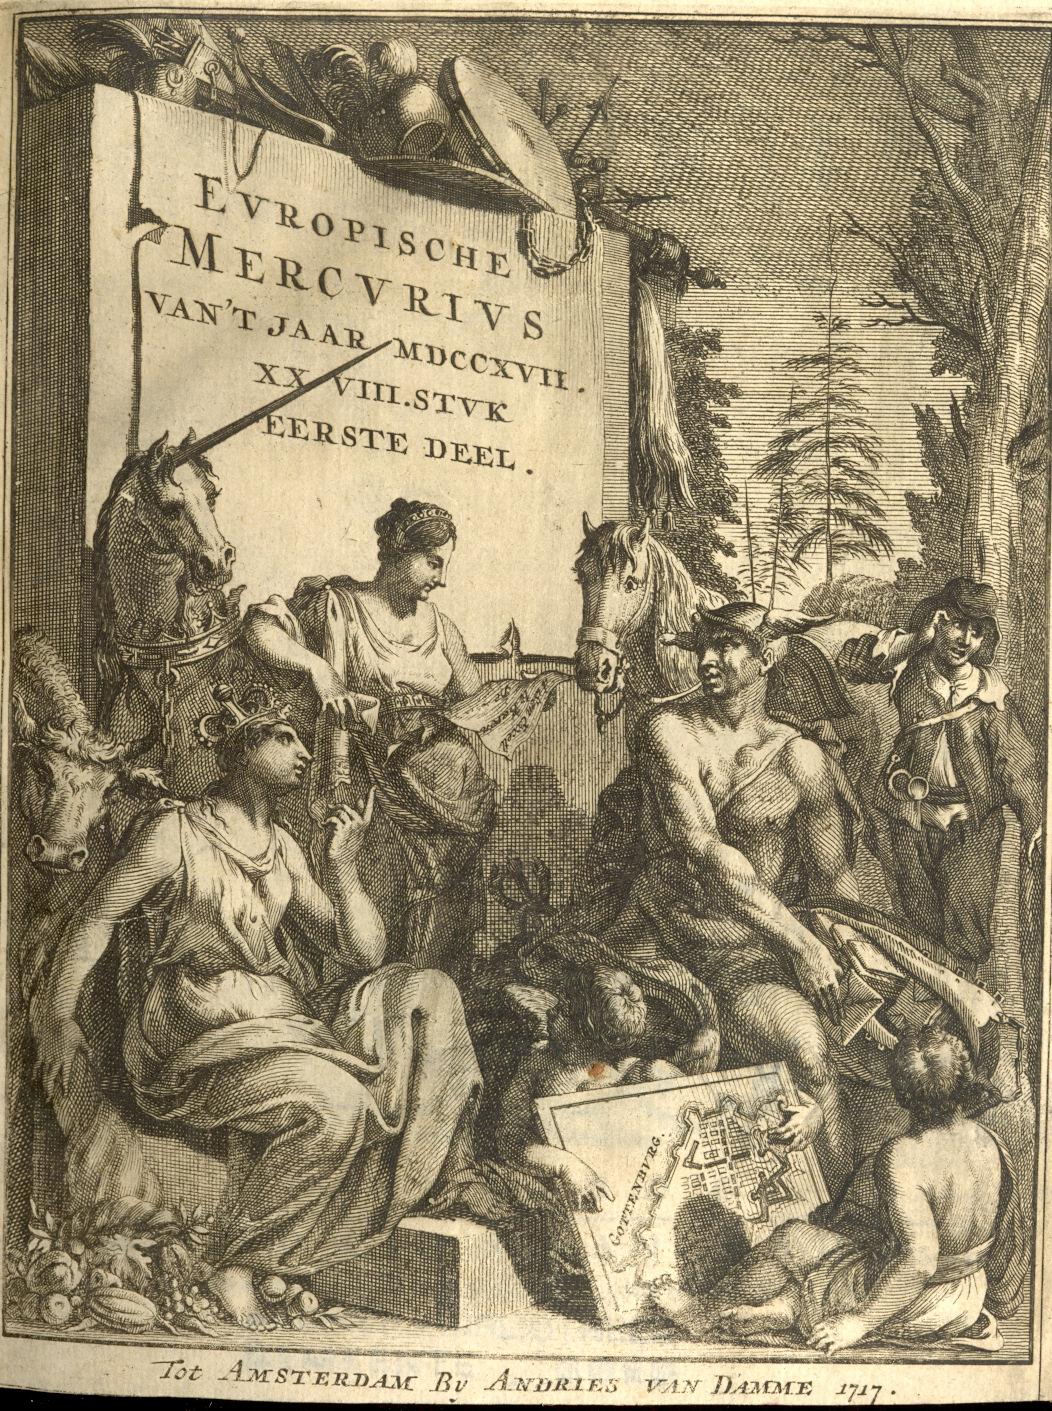 Europische Mercurius, 1717.